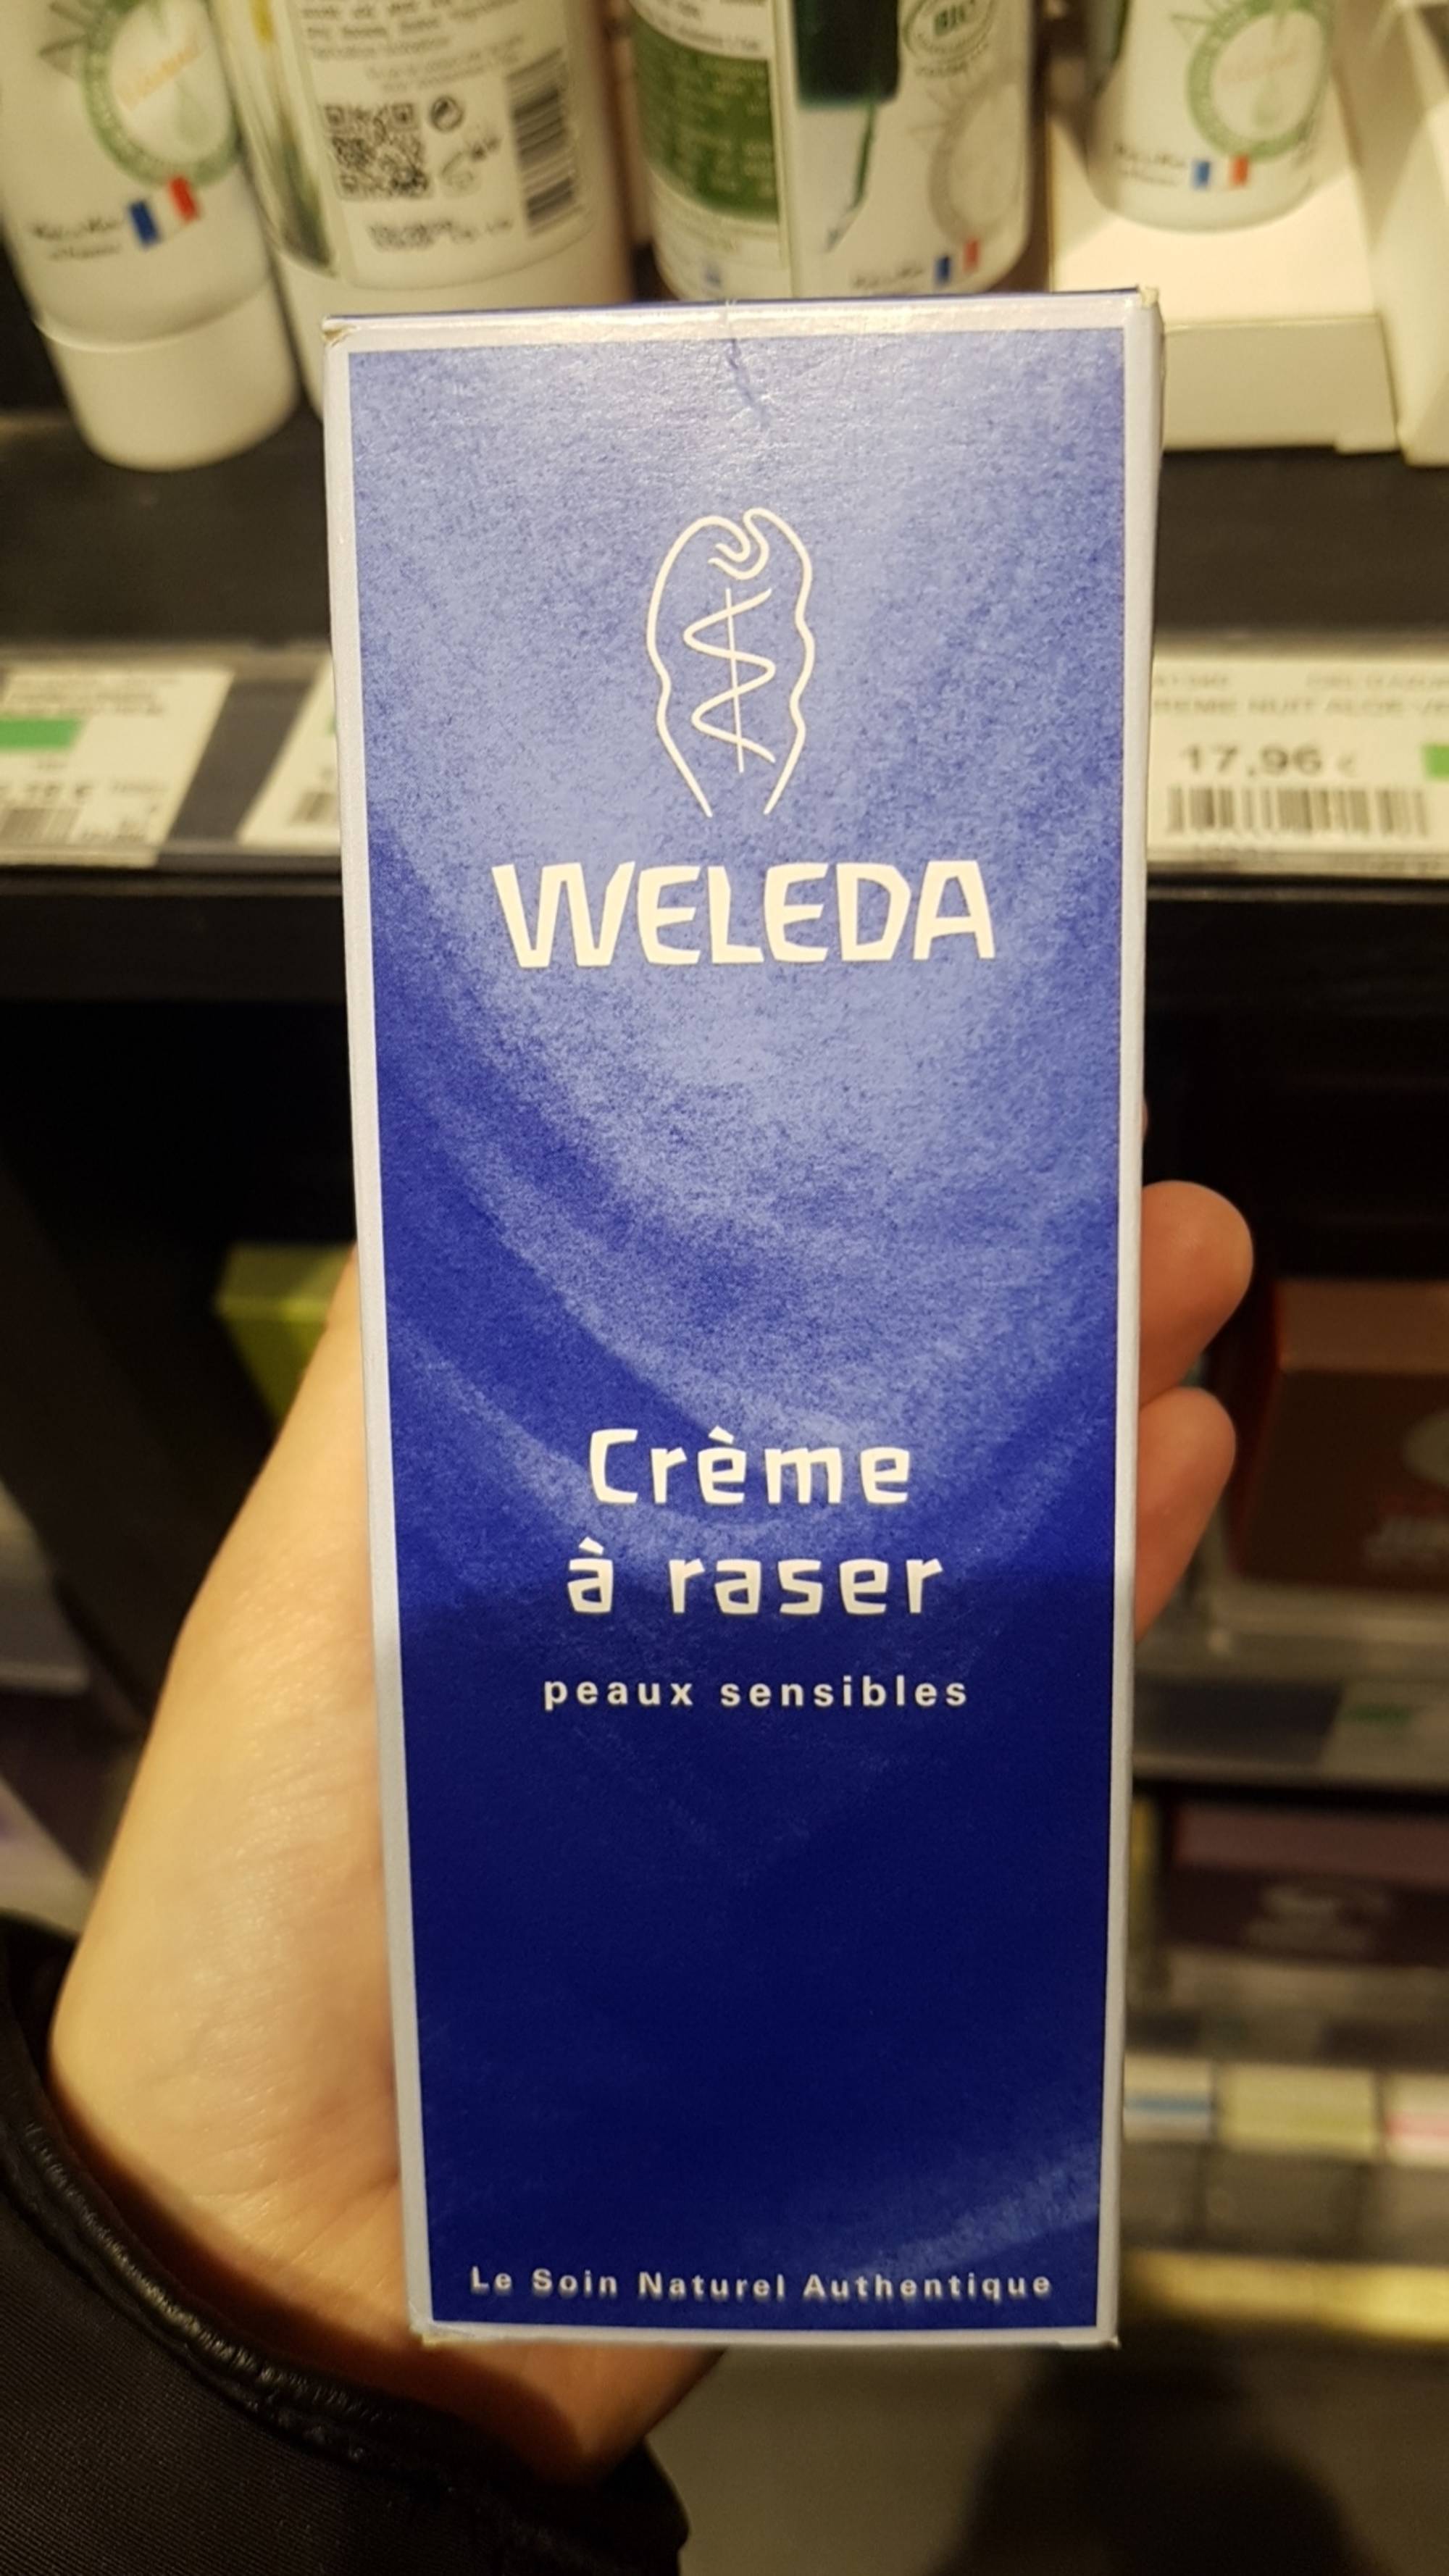 WELEDA - Crème à raser peaux sensibles